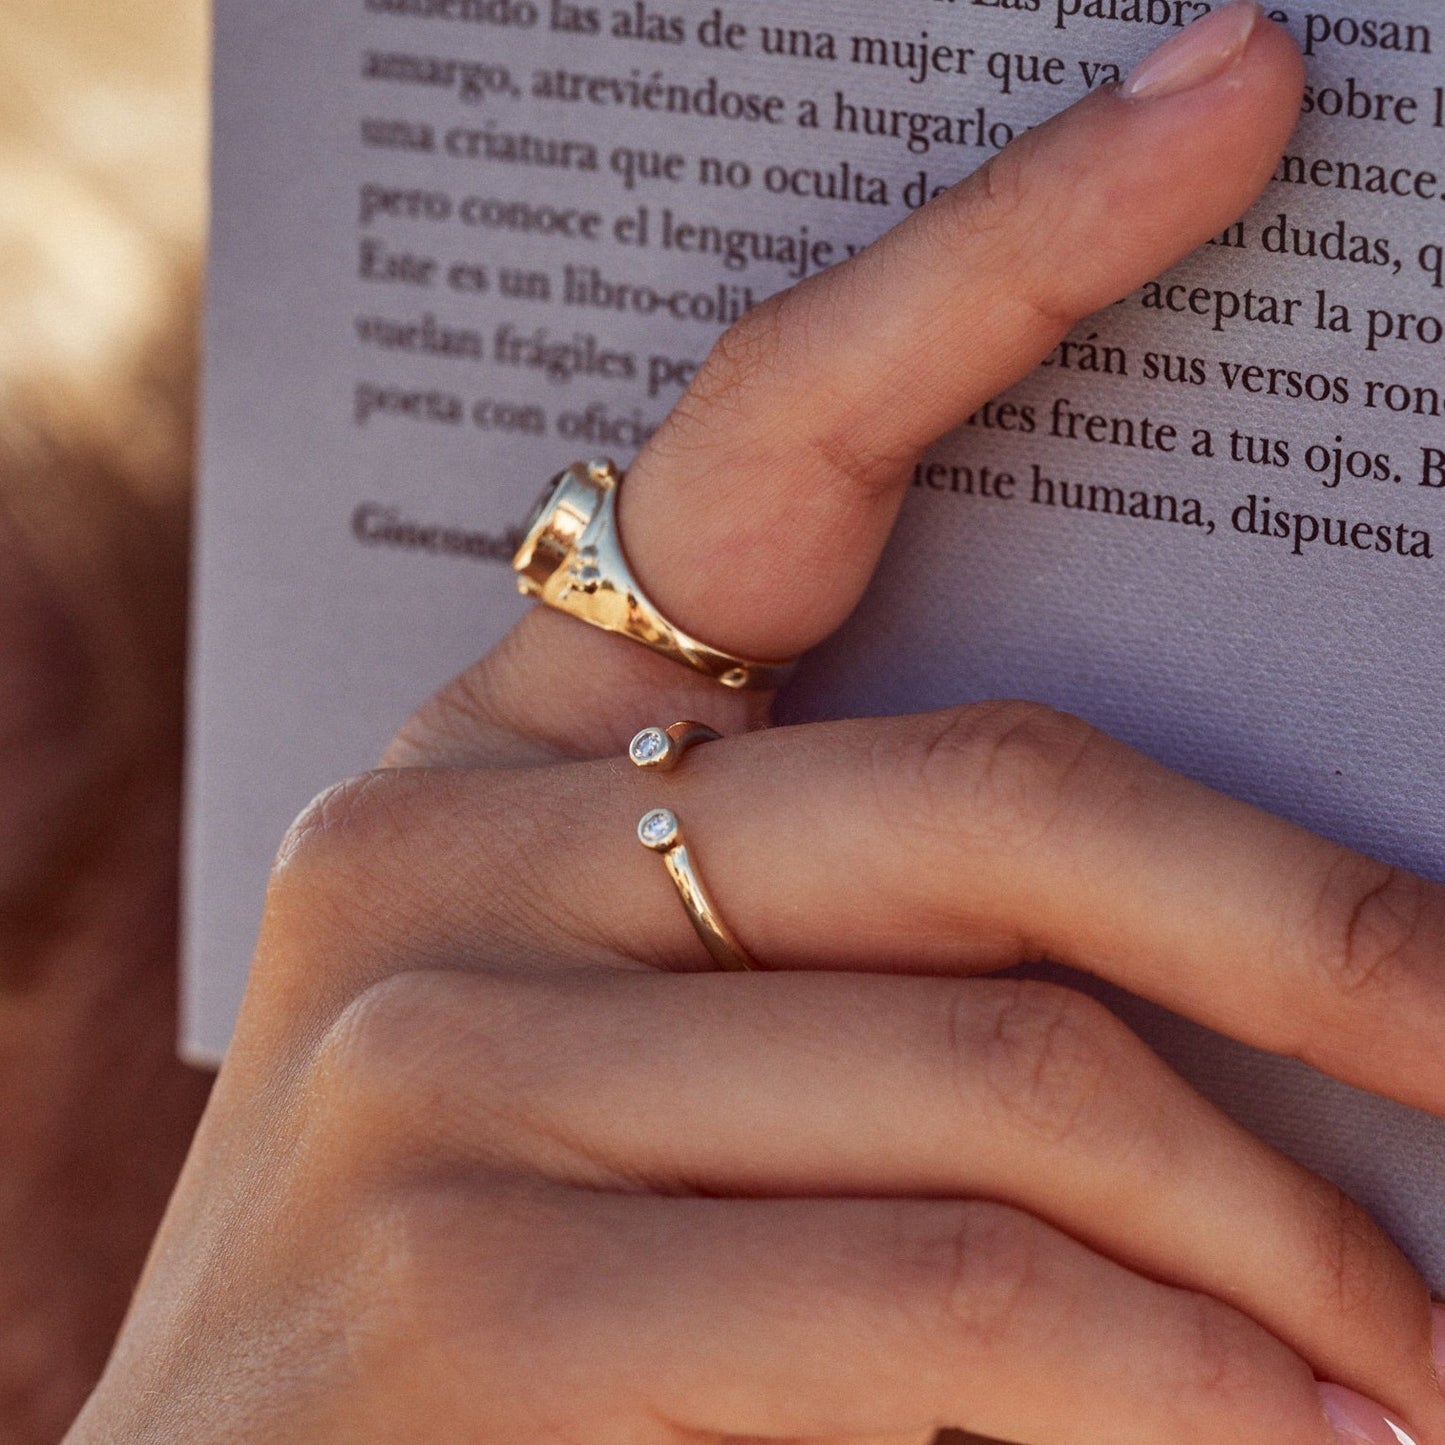 Mano de mujer sujetando un libro, donde se observa el Anillo Amelia, con su aro abierto y dos diamantes en los extremos.